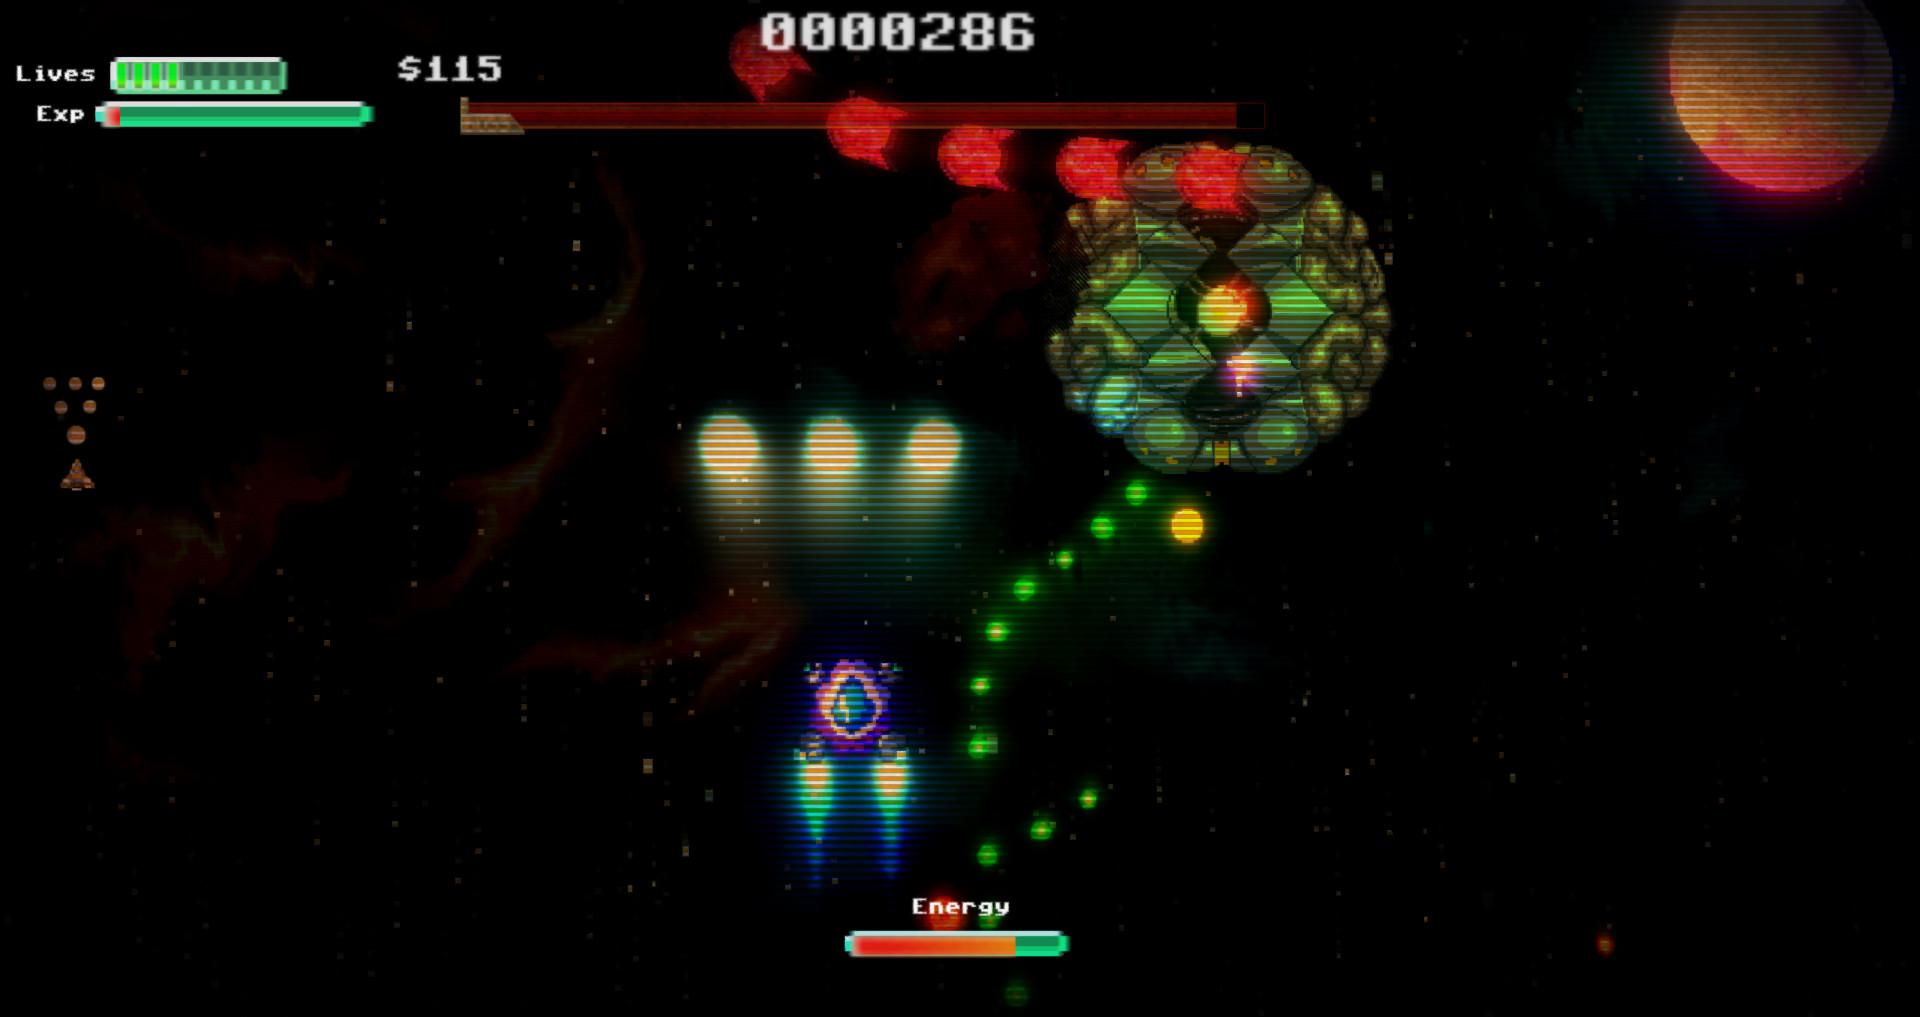 Screenshot №1 from game Star Drifter